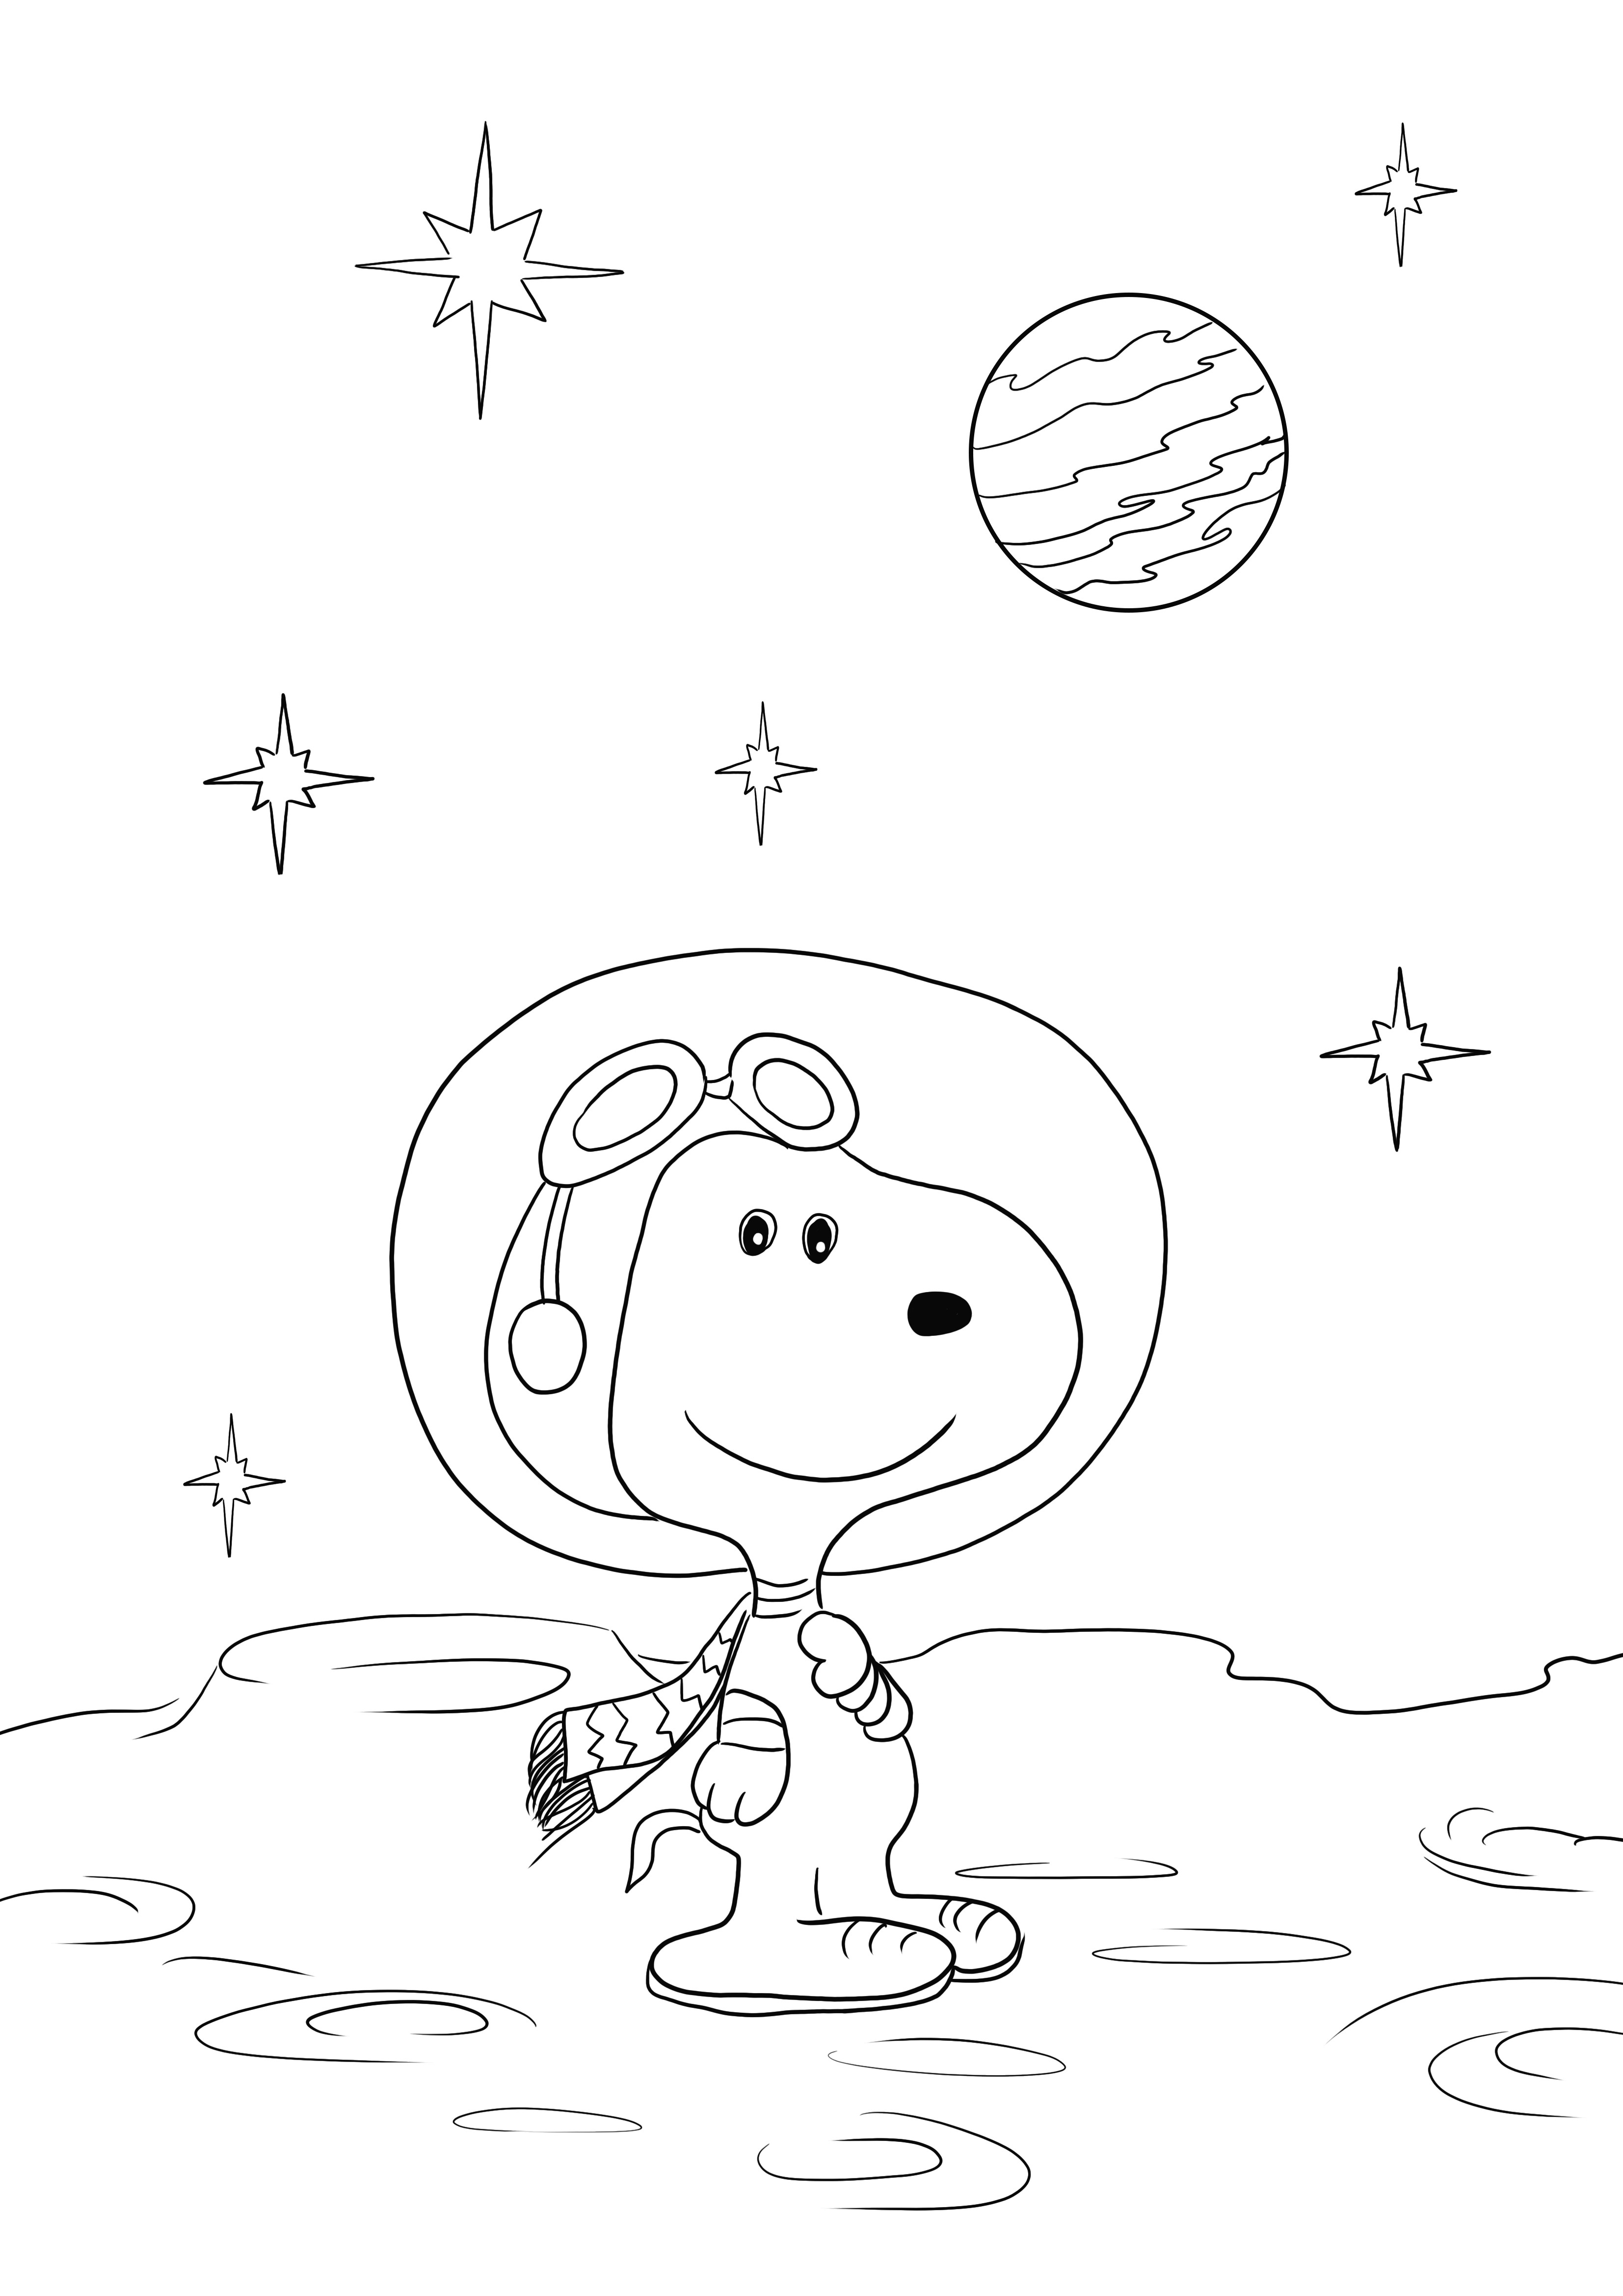 Tässä on ilmainen Snoopy in the Space -arkki, jonka voit ladata tai tulostaa ja värittää